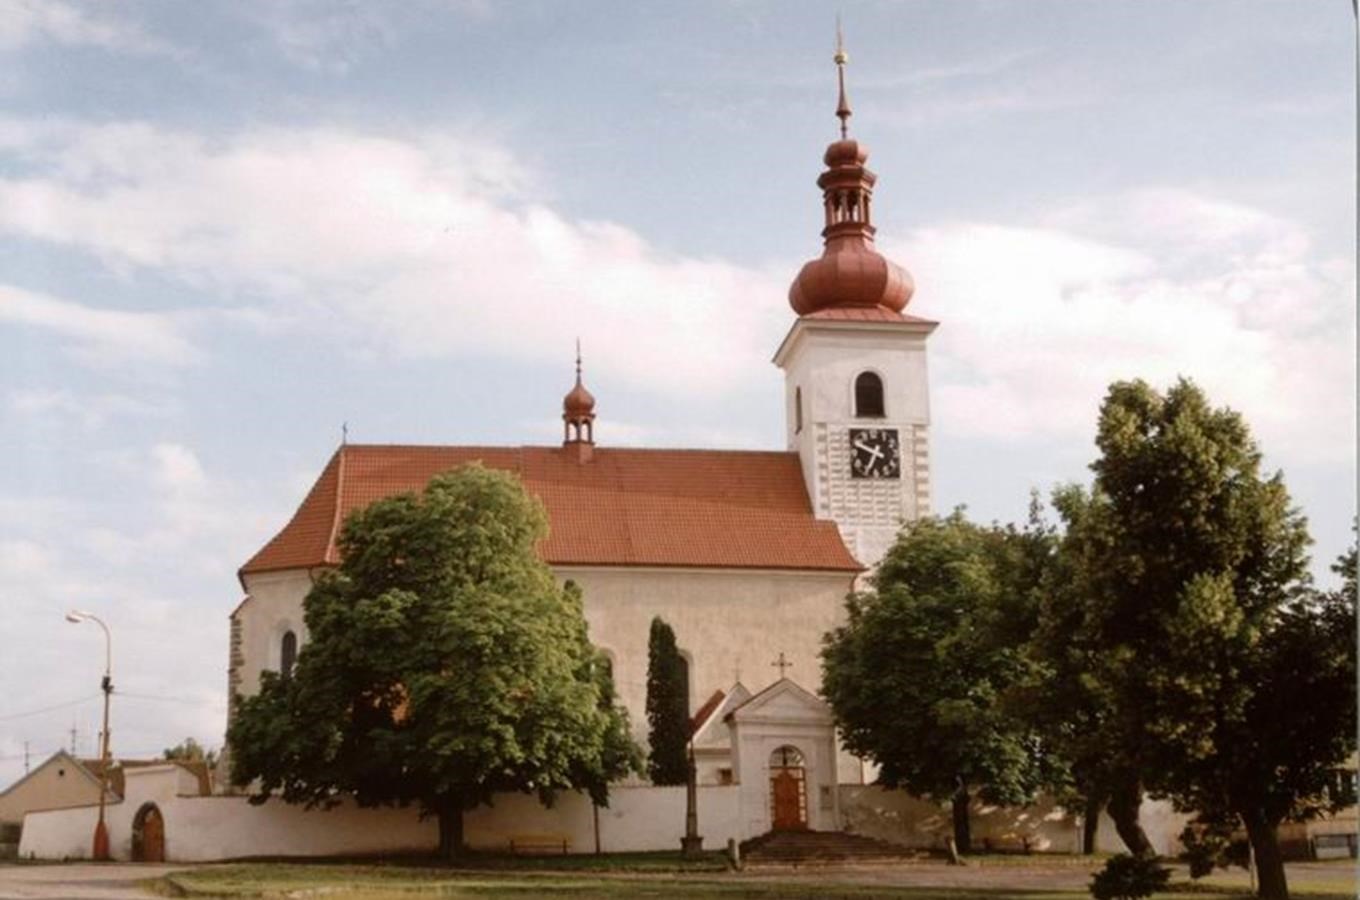 Kostel sv. Vavřince v Prčici